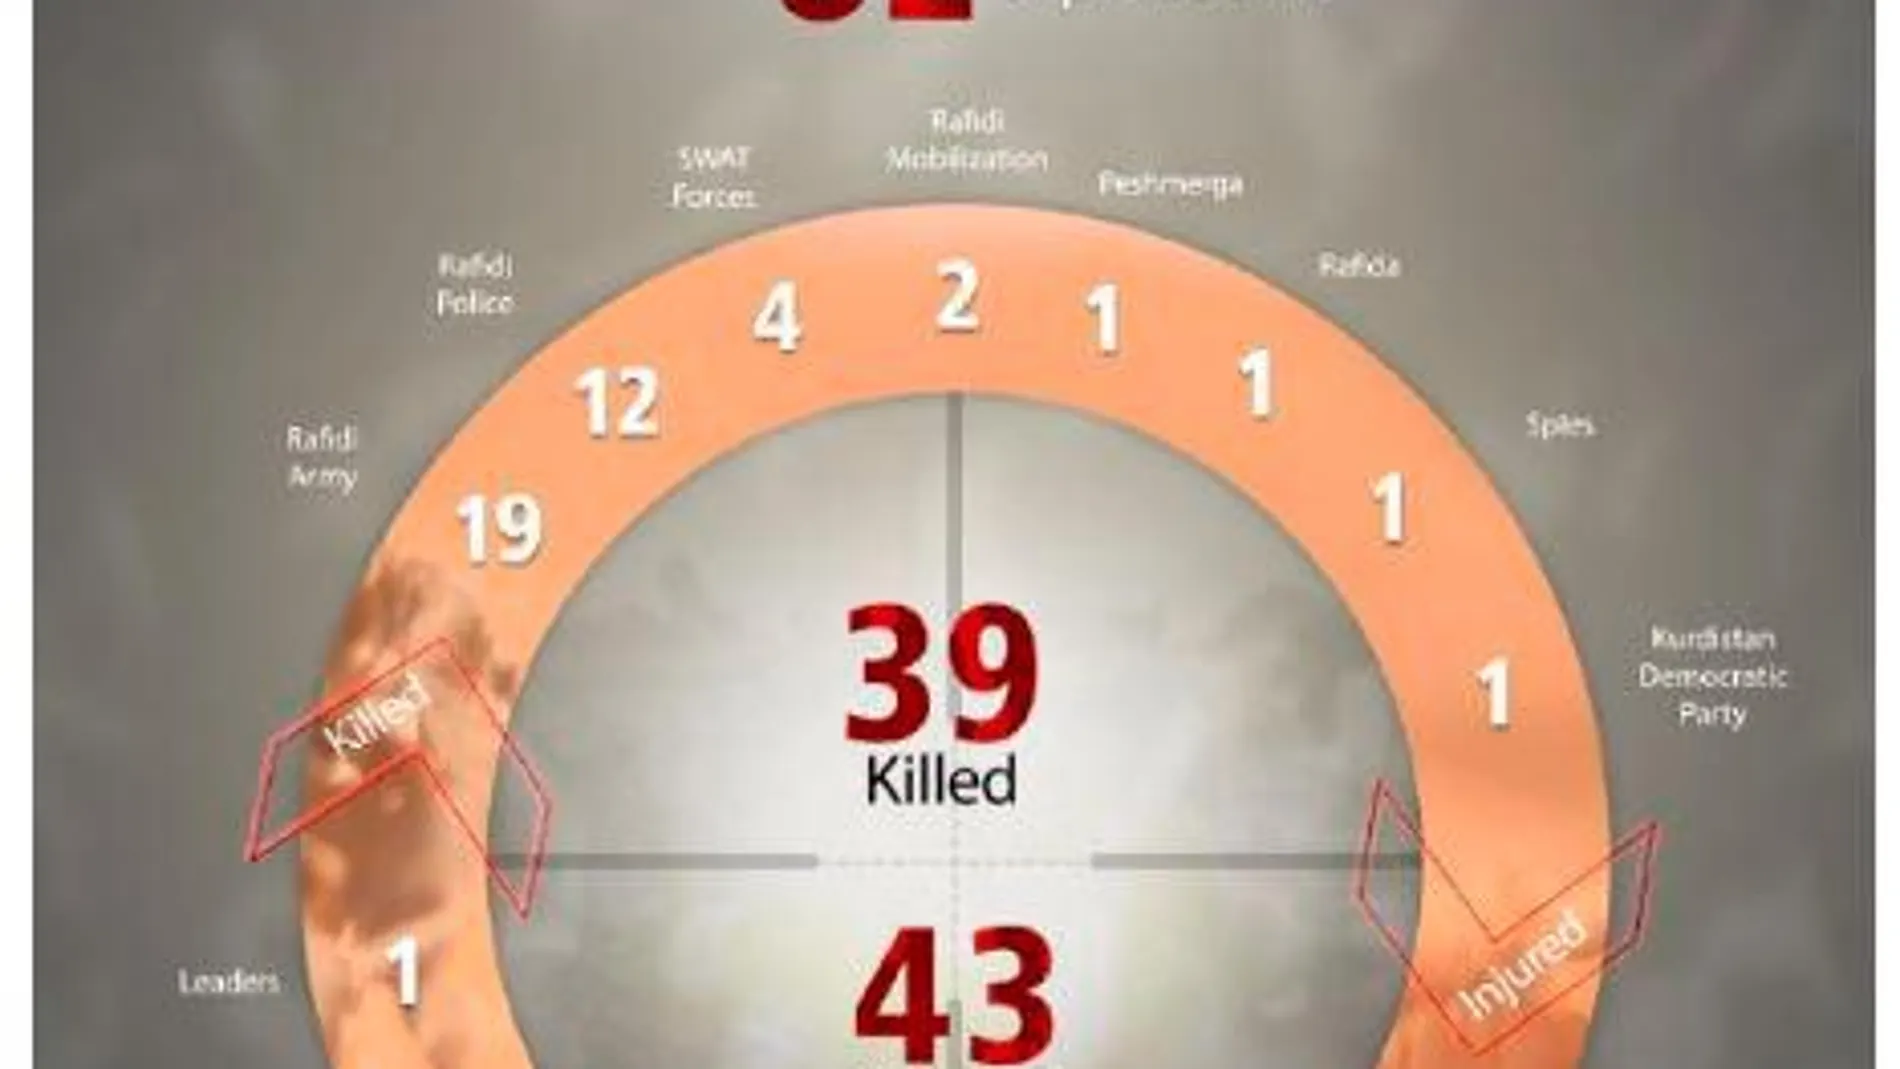 Gráfico de Daesh sobre atentados con francotiradores